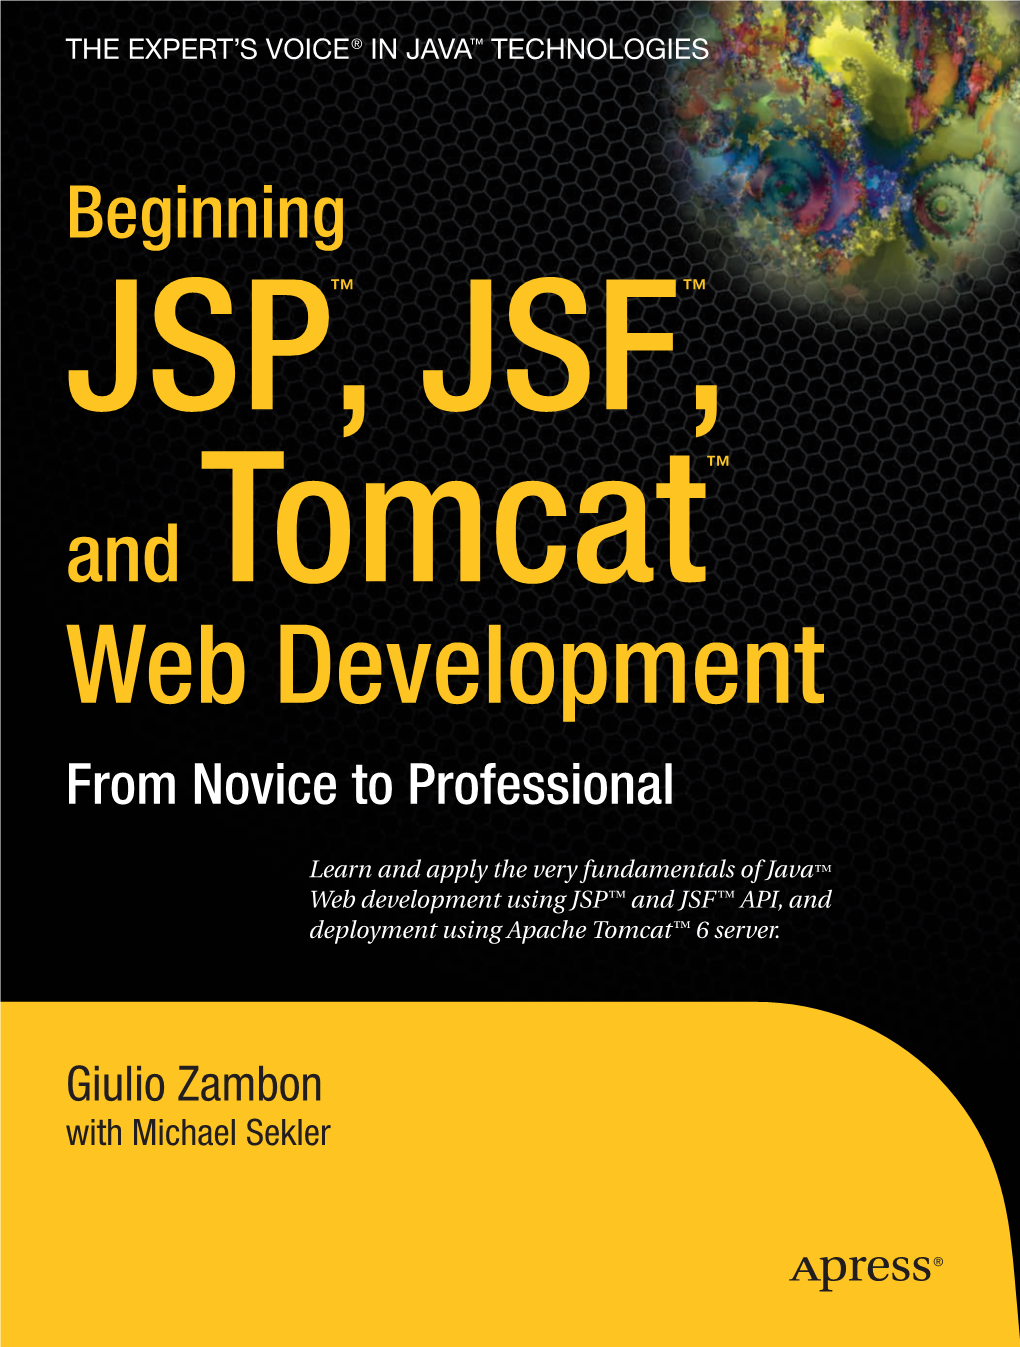 Beginning JSP, JSF, and Tomcat Web Development